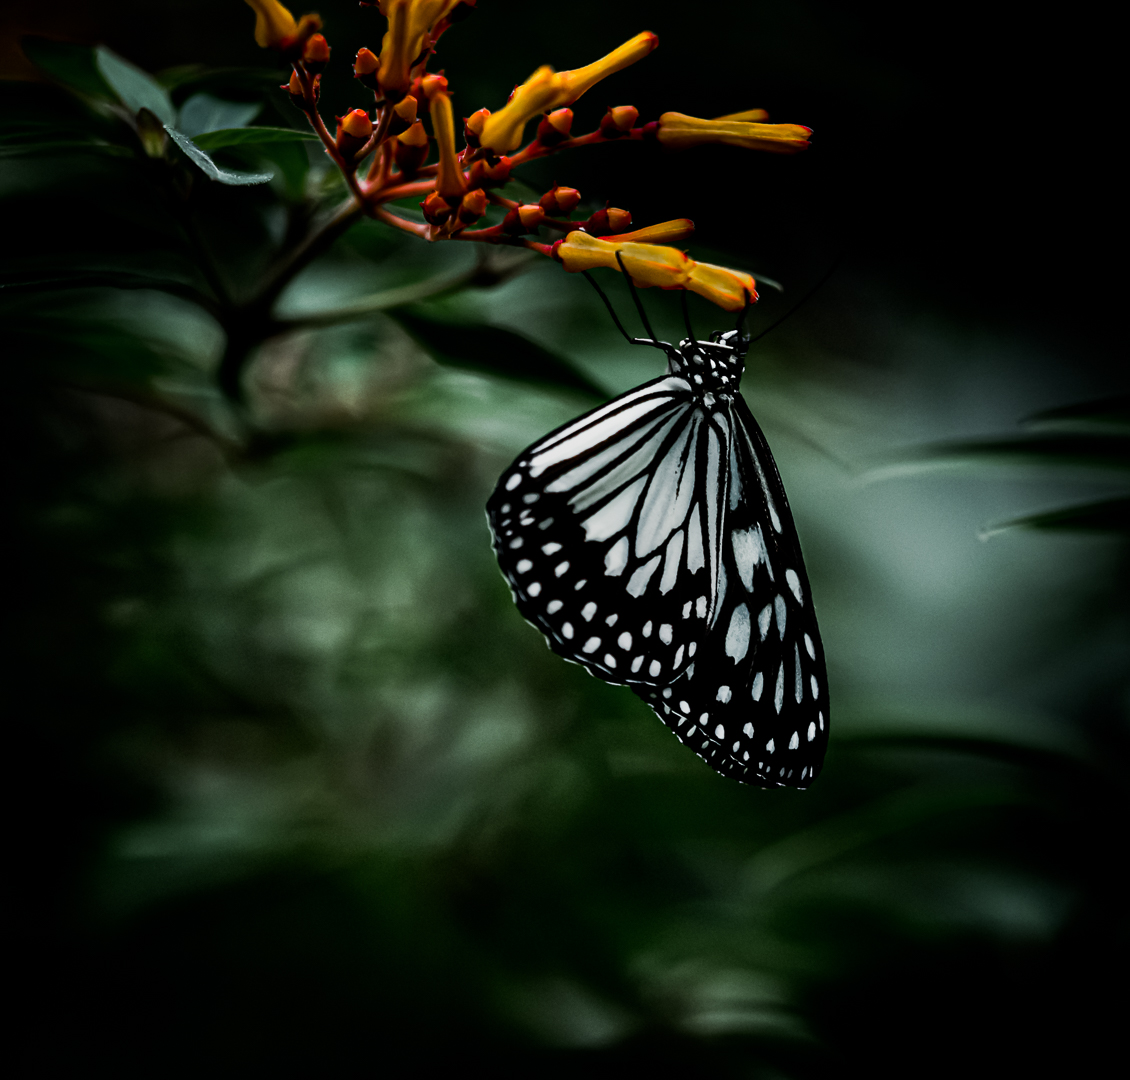 Dream sweet dreams, butterfly...